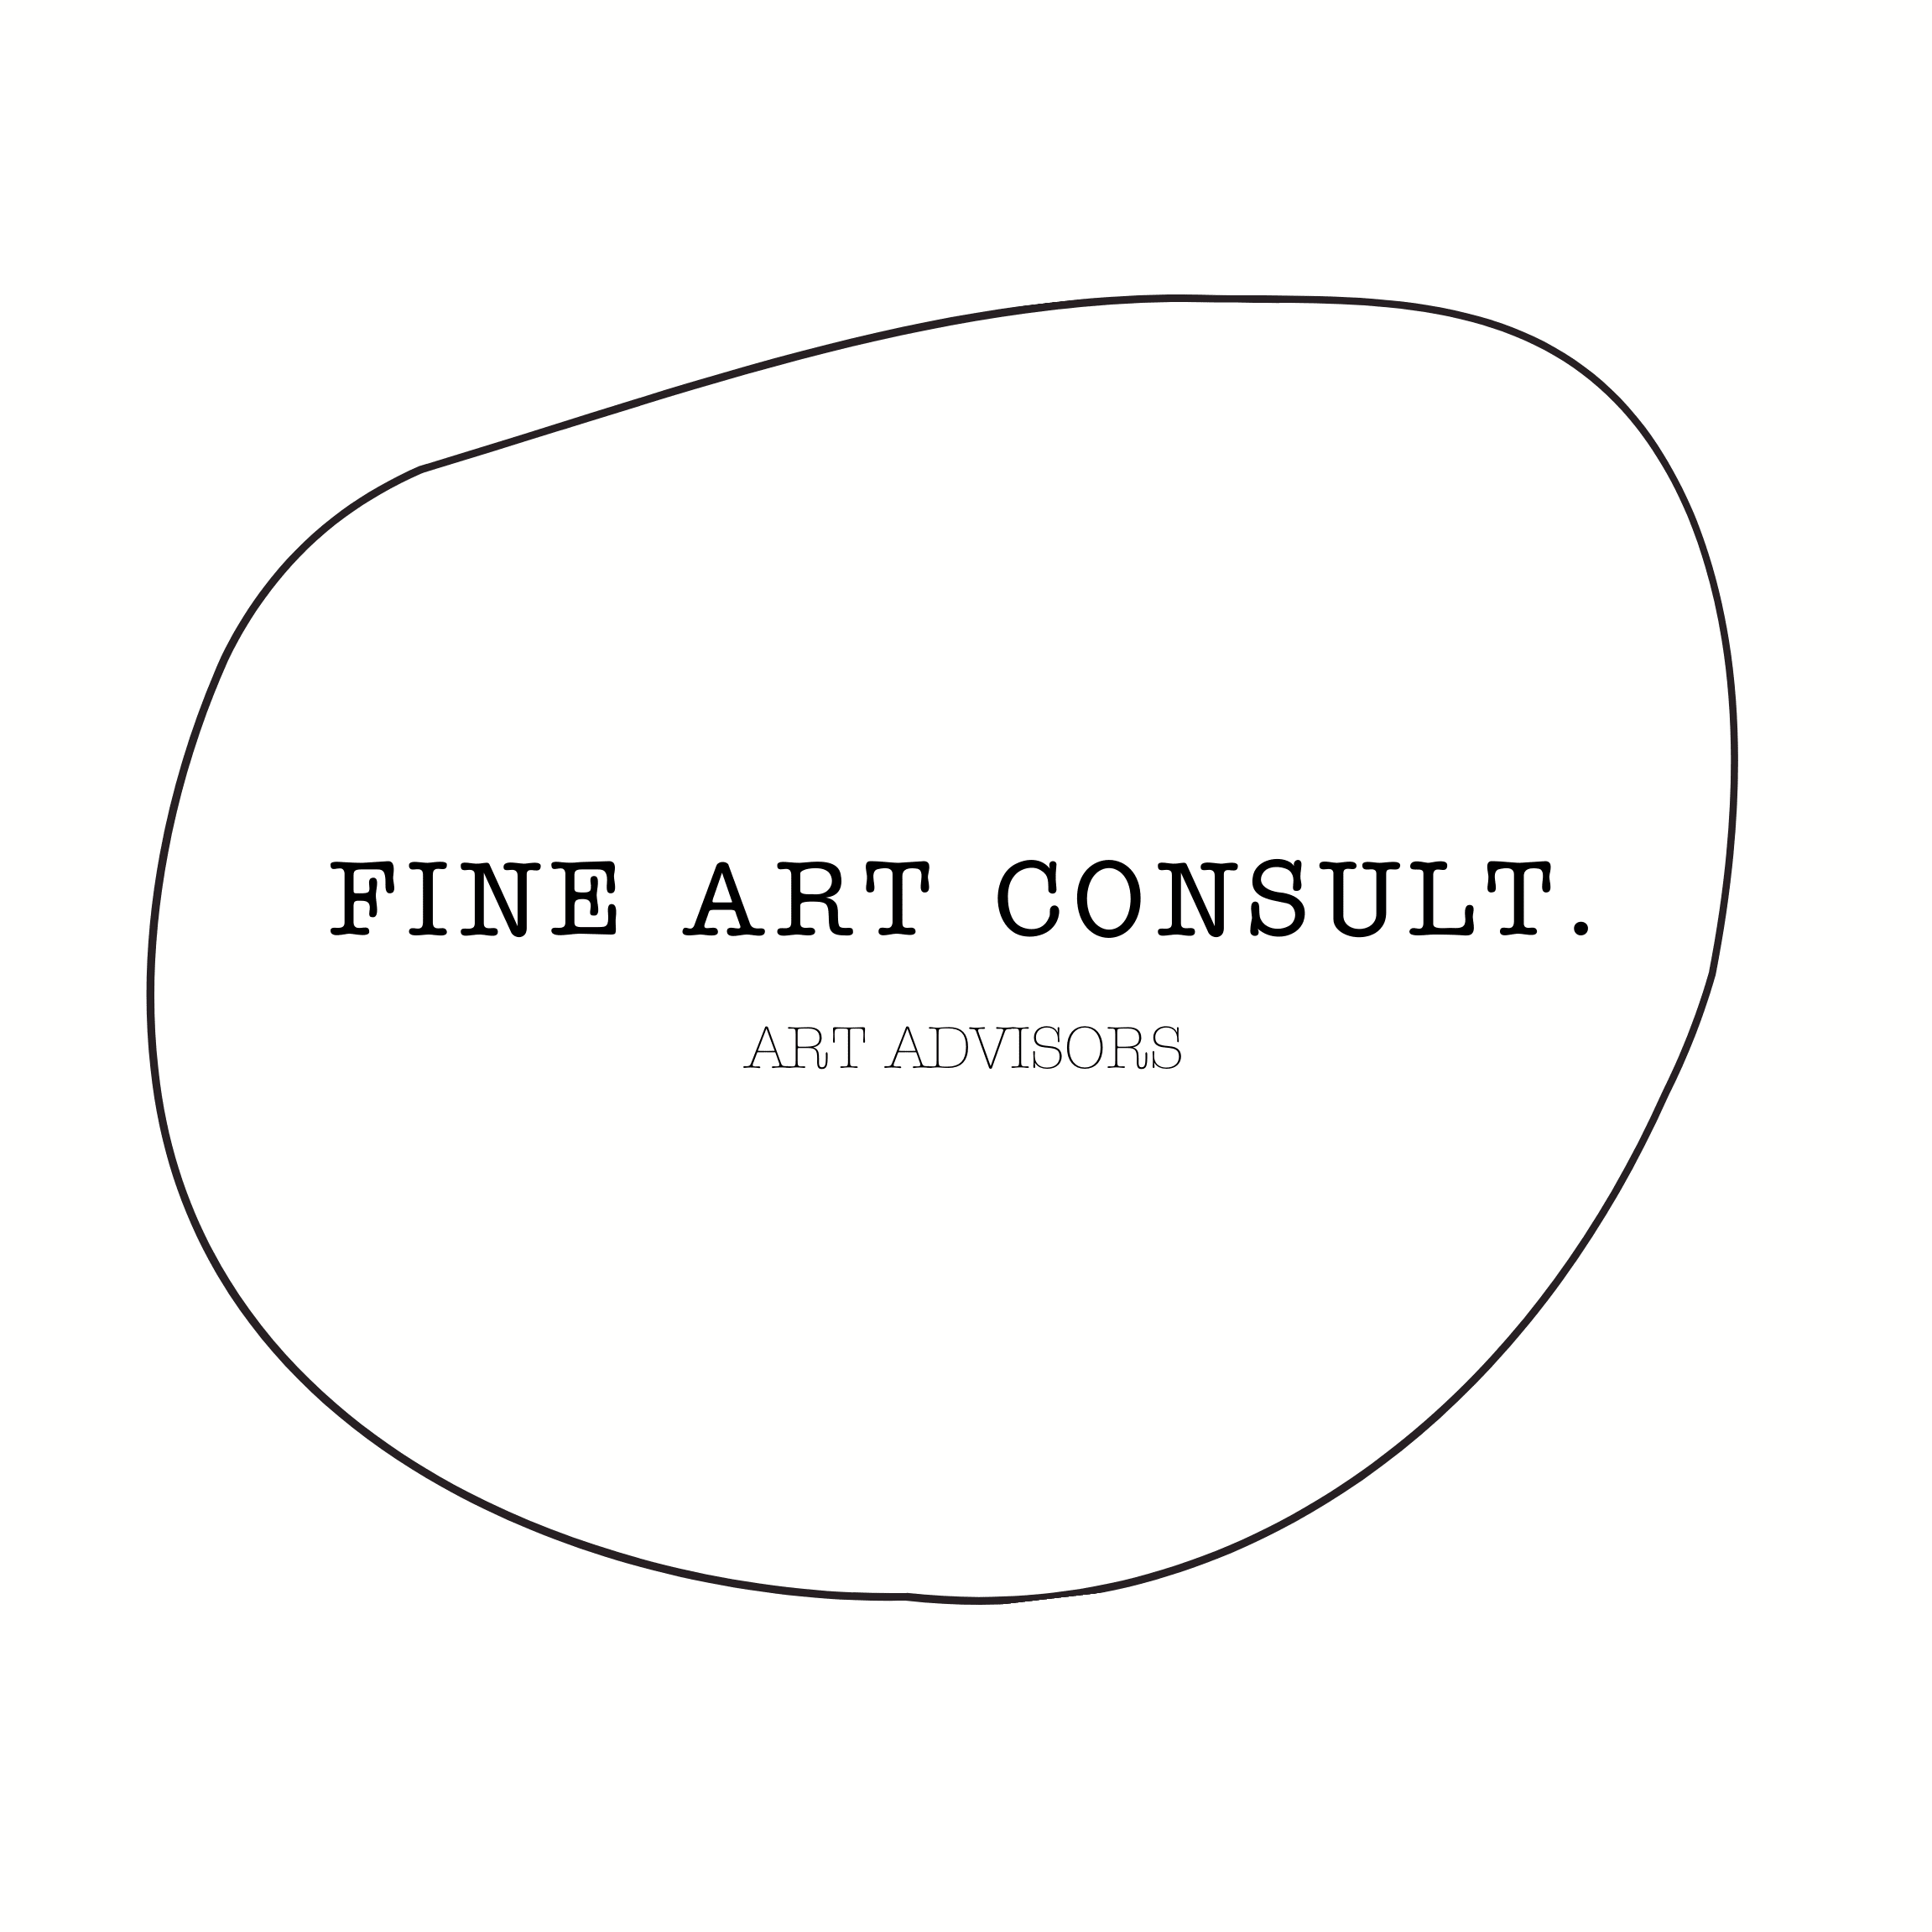 Fine Art Consult company logo